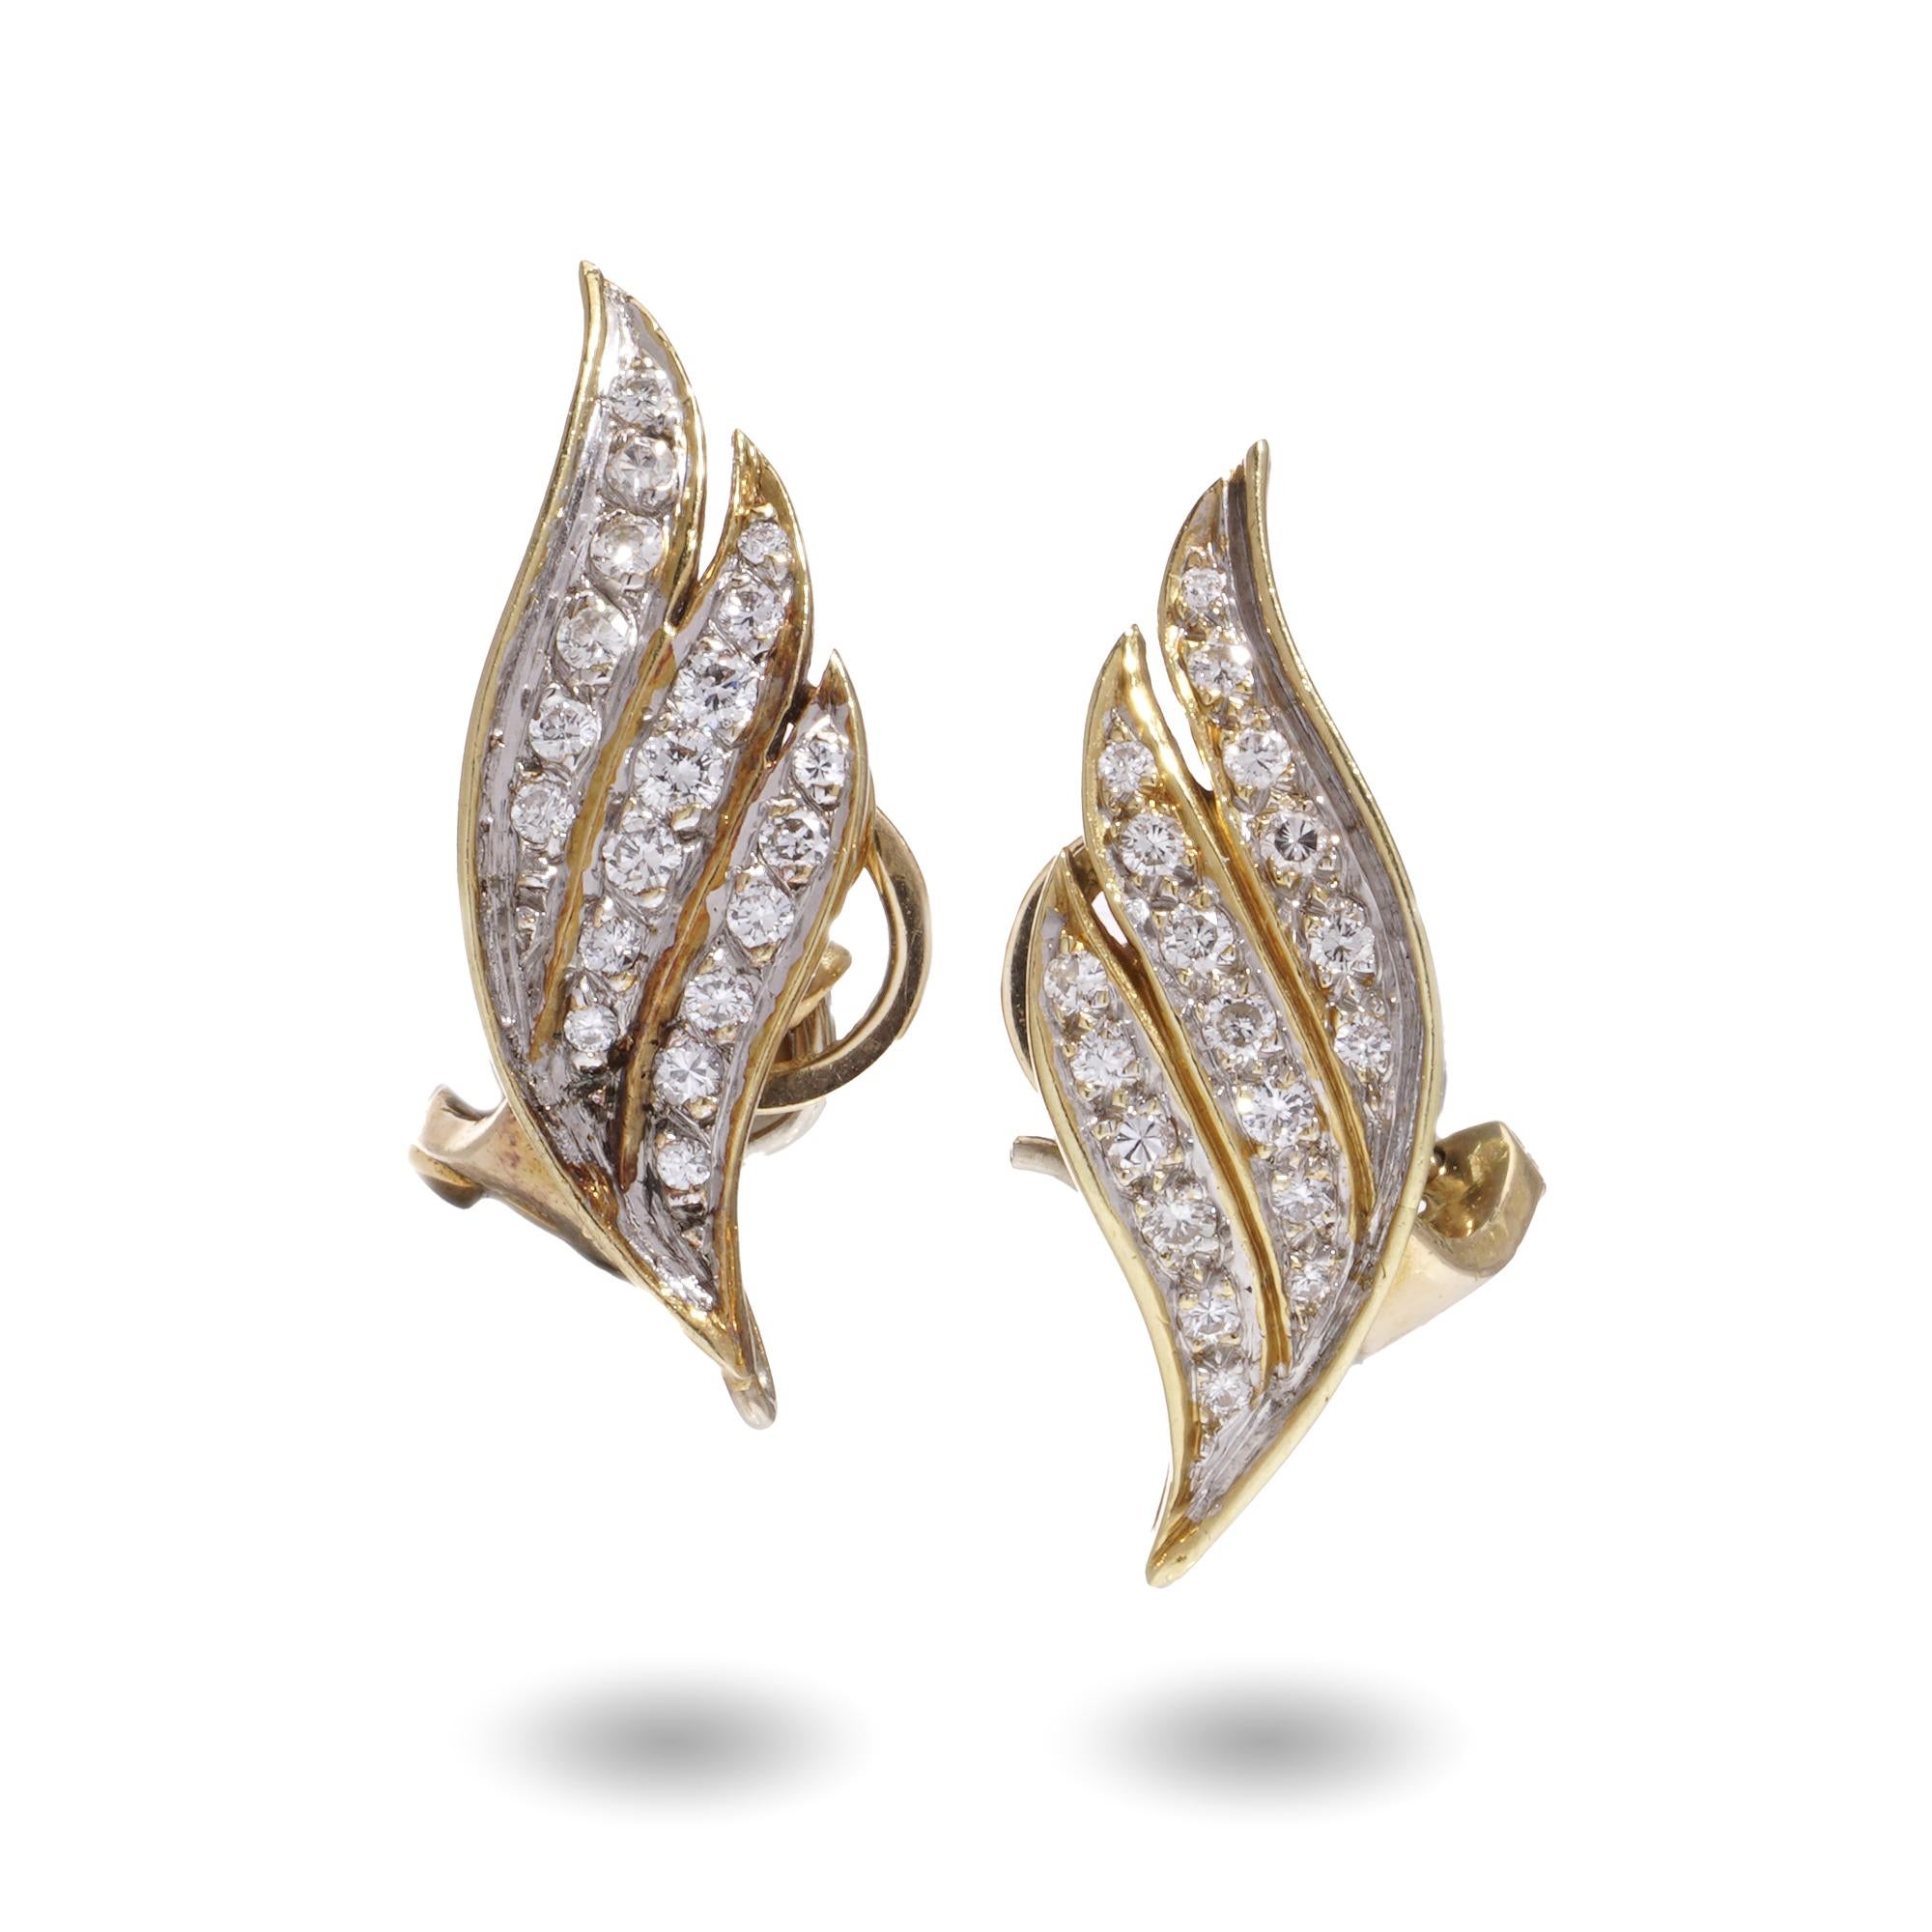 Vintage 18kt Gelbgold Paar geflügelte Diamanten gesetzt Tag und Nacht Ohrringe mit Zuchtperlen. 
Hergestellt in den 1980er Jahren 

Abmessungen - 
Länge: 4,2 x 1 cm 
Gewicht: 12 Gramm

Diamanten  - 
Schliff: Rund brillant 
Anzahl der Steine: 72